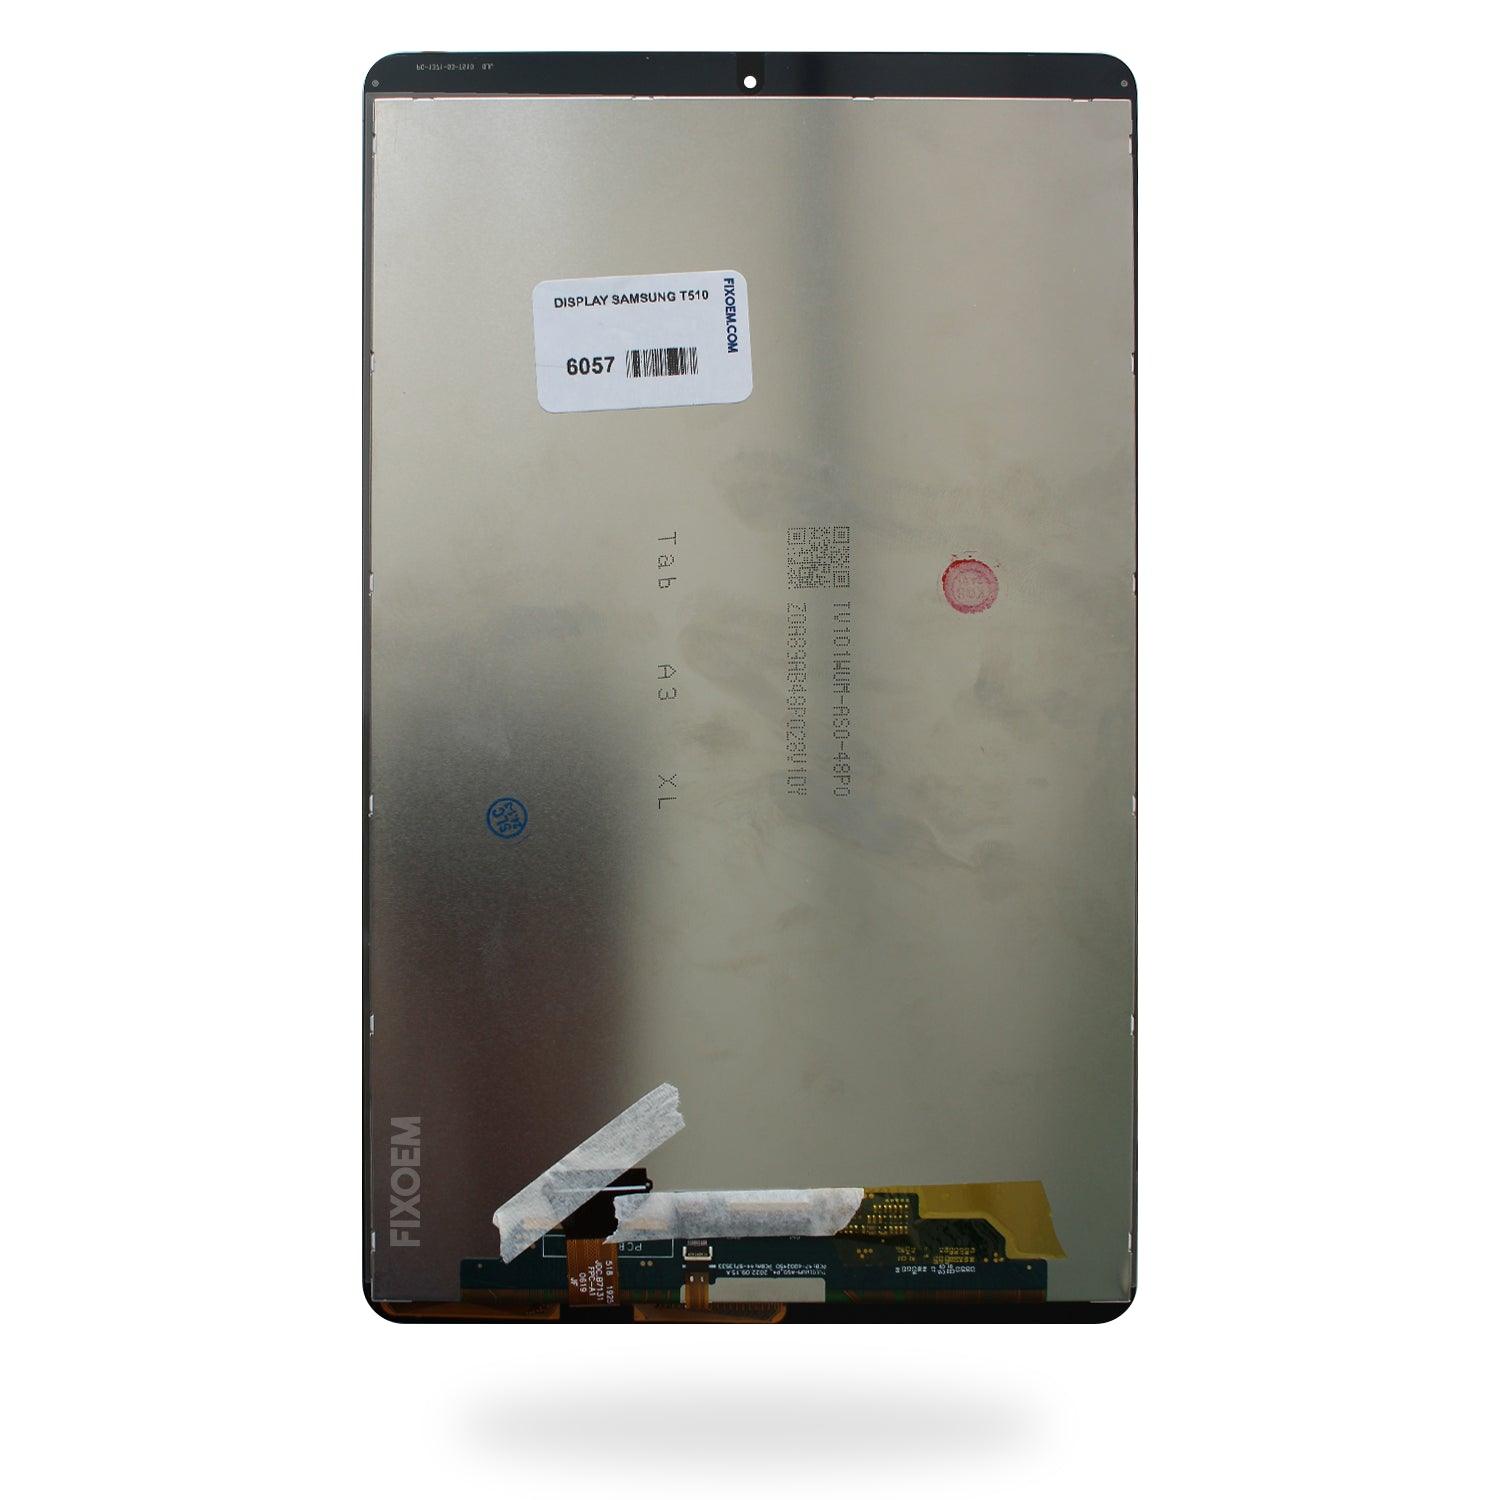 Display Samsung Tab A SM-T510 / SM-T515 / SM-T517 2019 a solo $ 540.00 Refaccion y puestos celulares, refurbish y microelectronica.- FixOEM